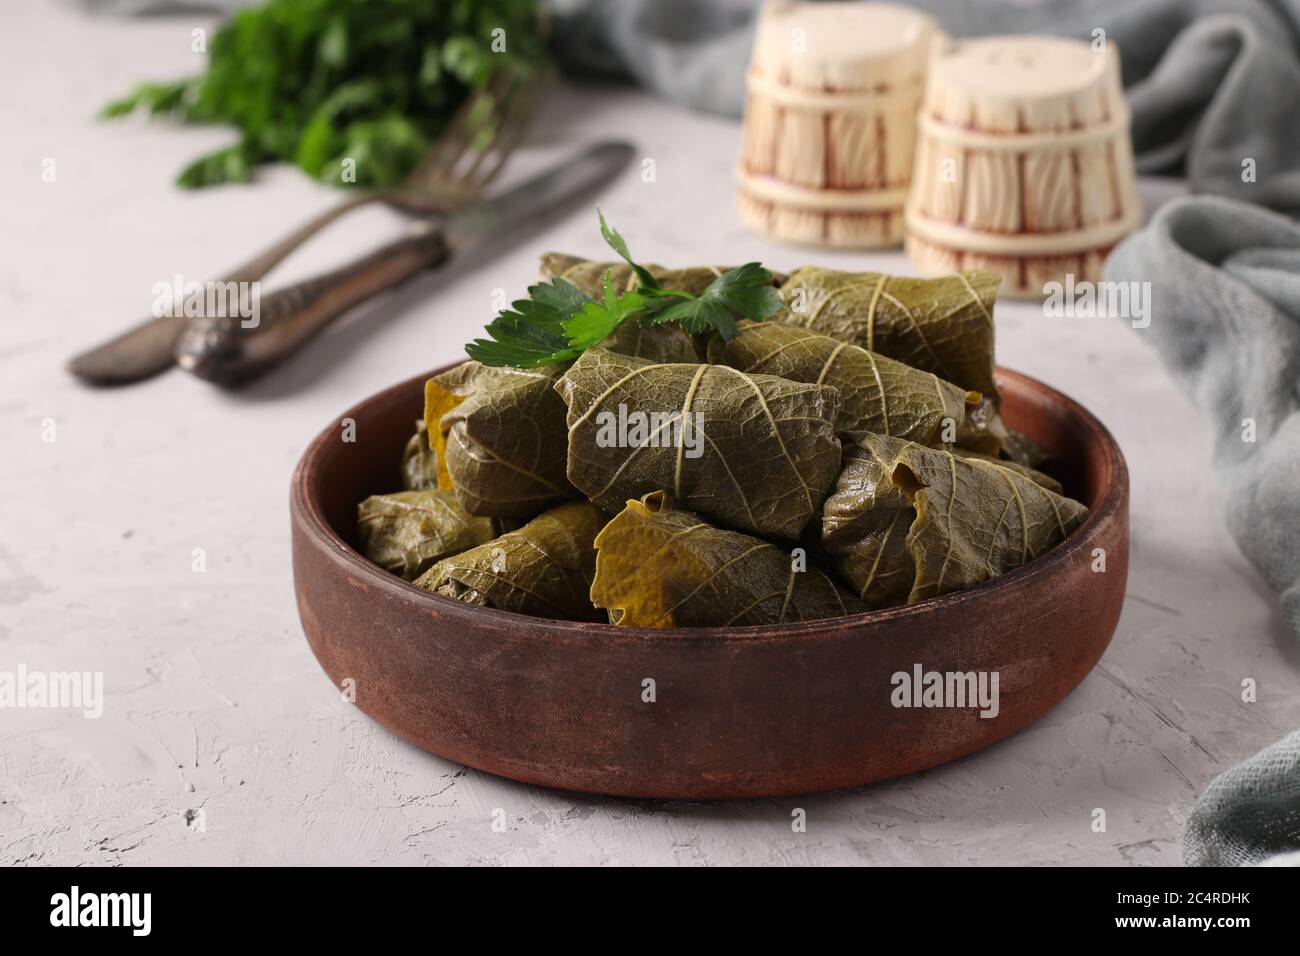 Dolma - foglie di uva farcite con riso e carne su fondo grigio chiaro. Cucina tradizionale caucasica, greca, ottomana e turca, Closeup Foto Stock